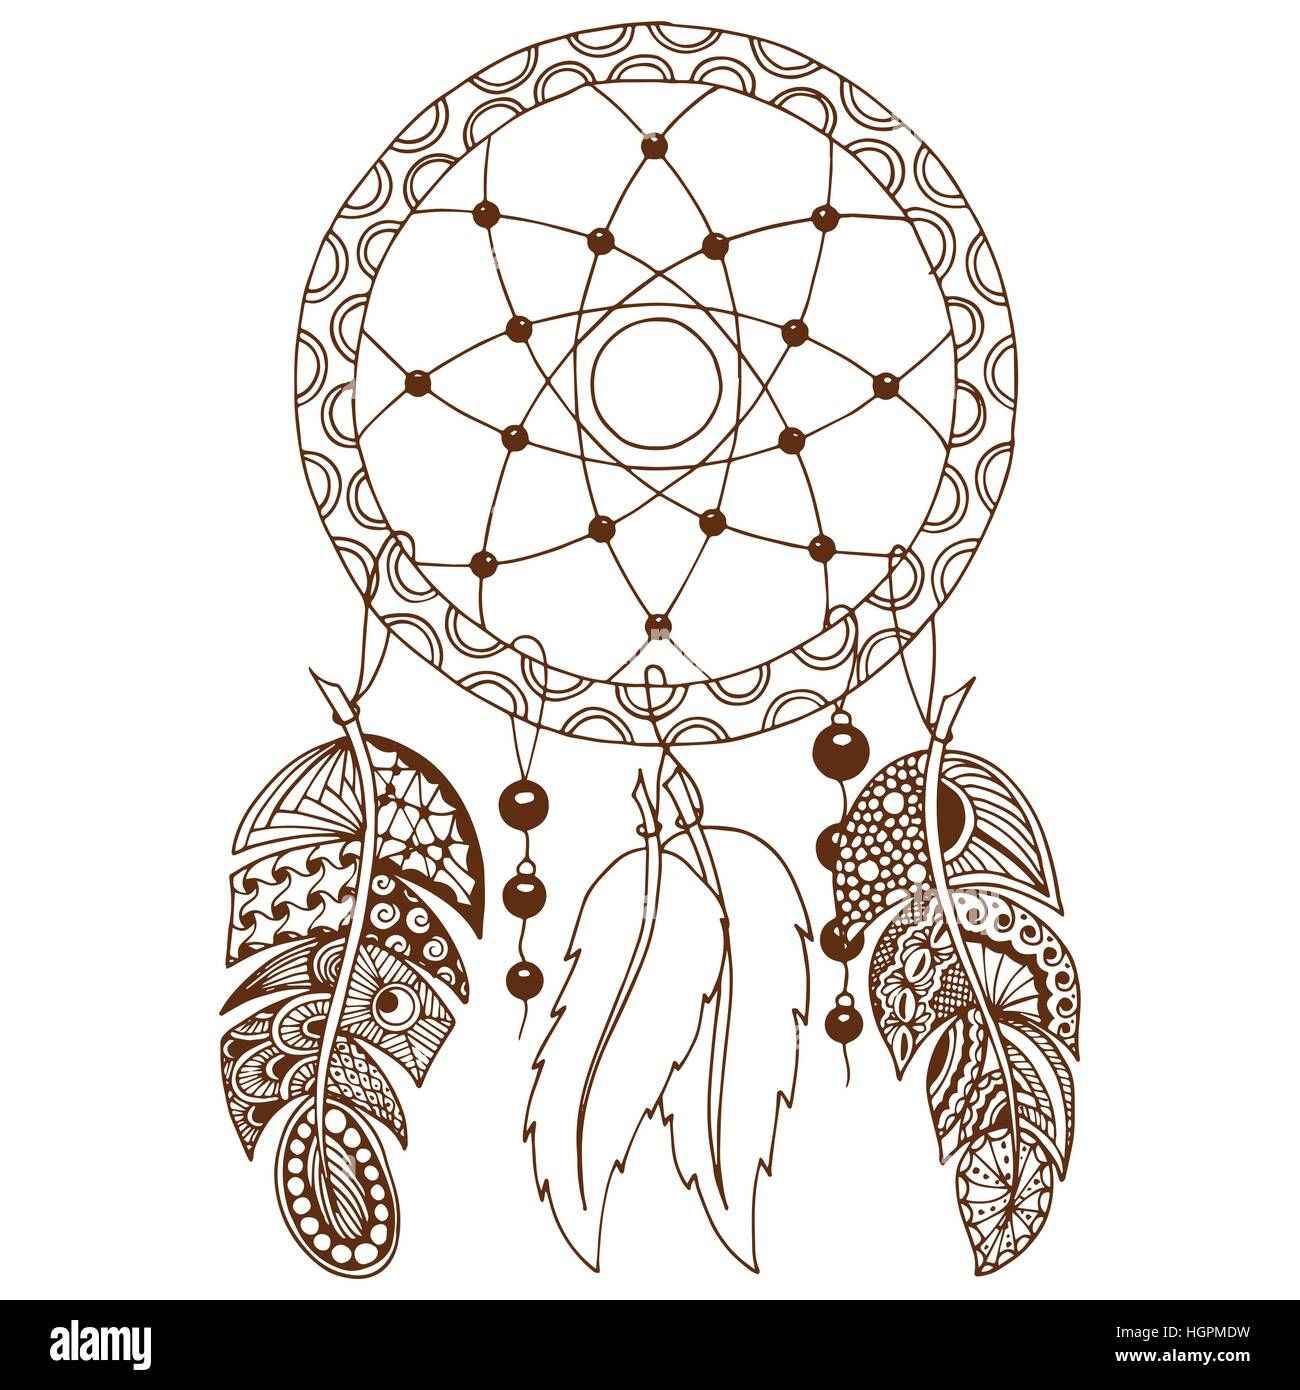 Handgezeichnete Native American Indian Talisman farbige Dreamcatcher mit Federn und Mond. Vektor-Hipster-Illustration isoliert auf weiss. Ethnischen design Stock Vektor